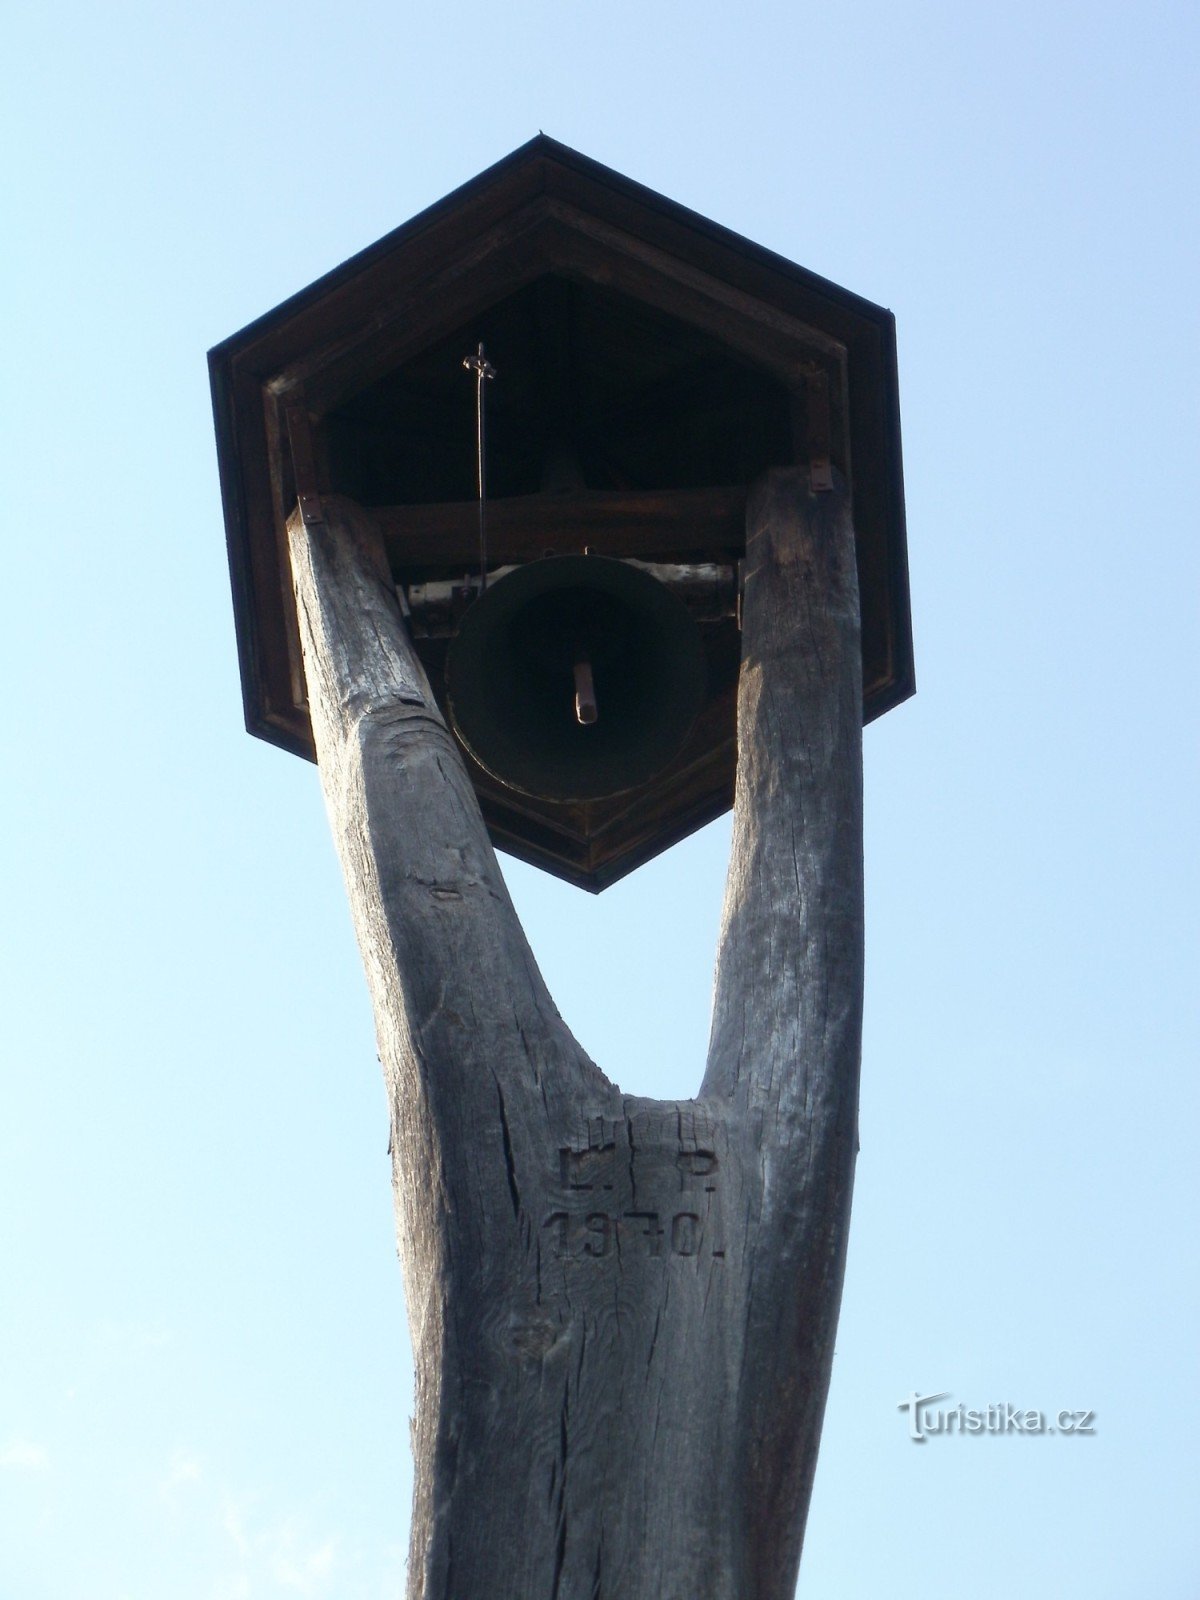 Градец Кралове - дзвіниця та пам'ятник розп'яття у Вєкоши